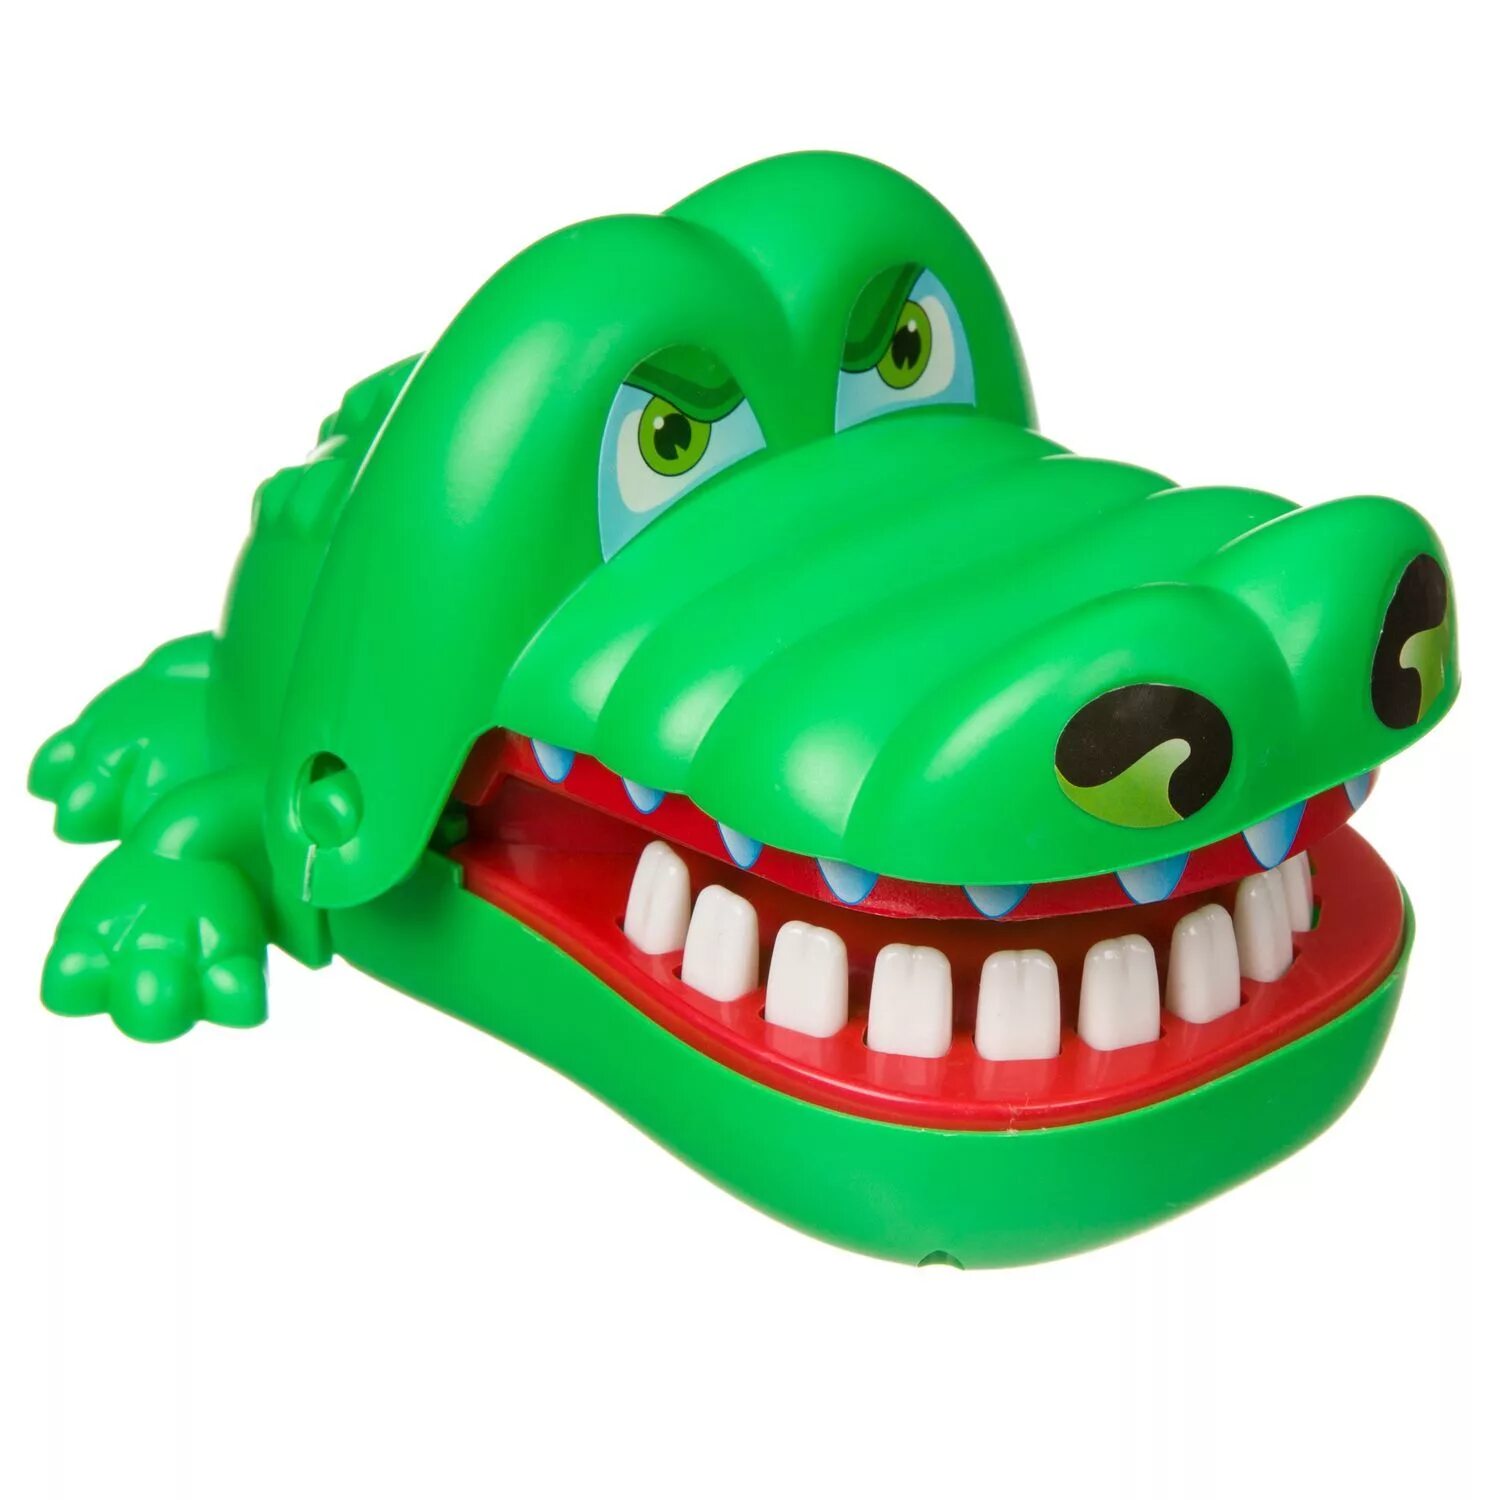 Настольная игра Bondibon зубастый крокодил вв2073. Настольная игра Bondibon зубастый крокодил вв3691. Настольная игра Bondibon зубастый крокодил вв3692. Крокодилы Бондибон.